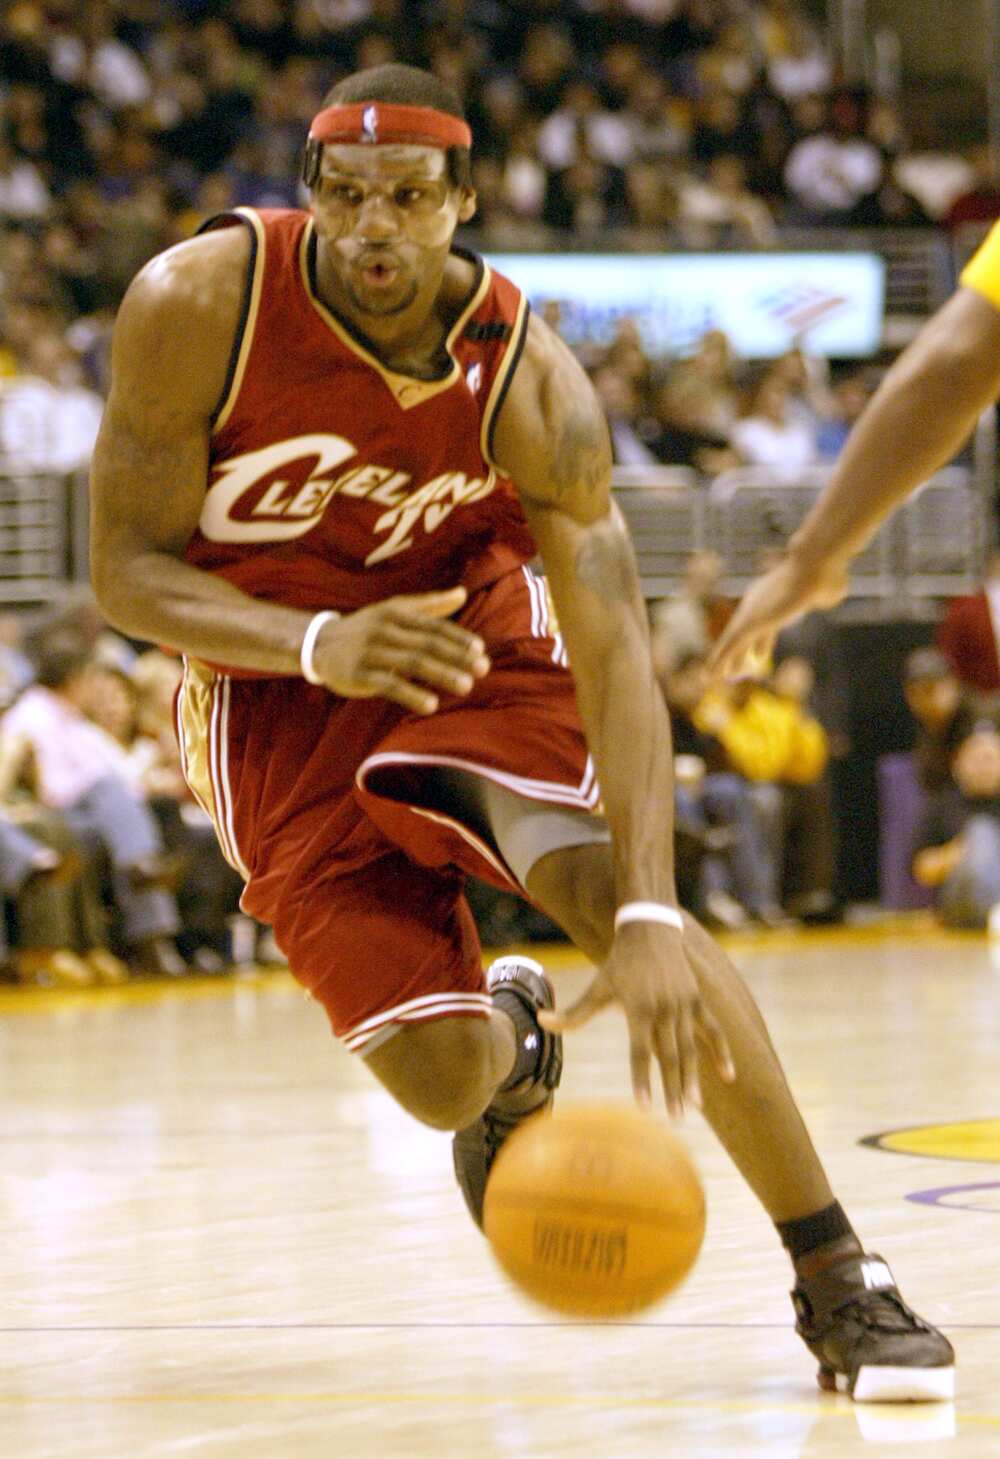 LeBron James fait tomber l'action cout.Game dans la première moitié des Los Angeles Lakers contre Cleveland Cavaliers au Staples Center de Los Angeles. image numérique prise le 13/01/2005 (Photo par Anne Cusack/Los Angeles Times via Getty Images)